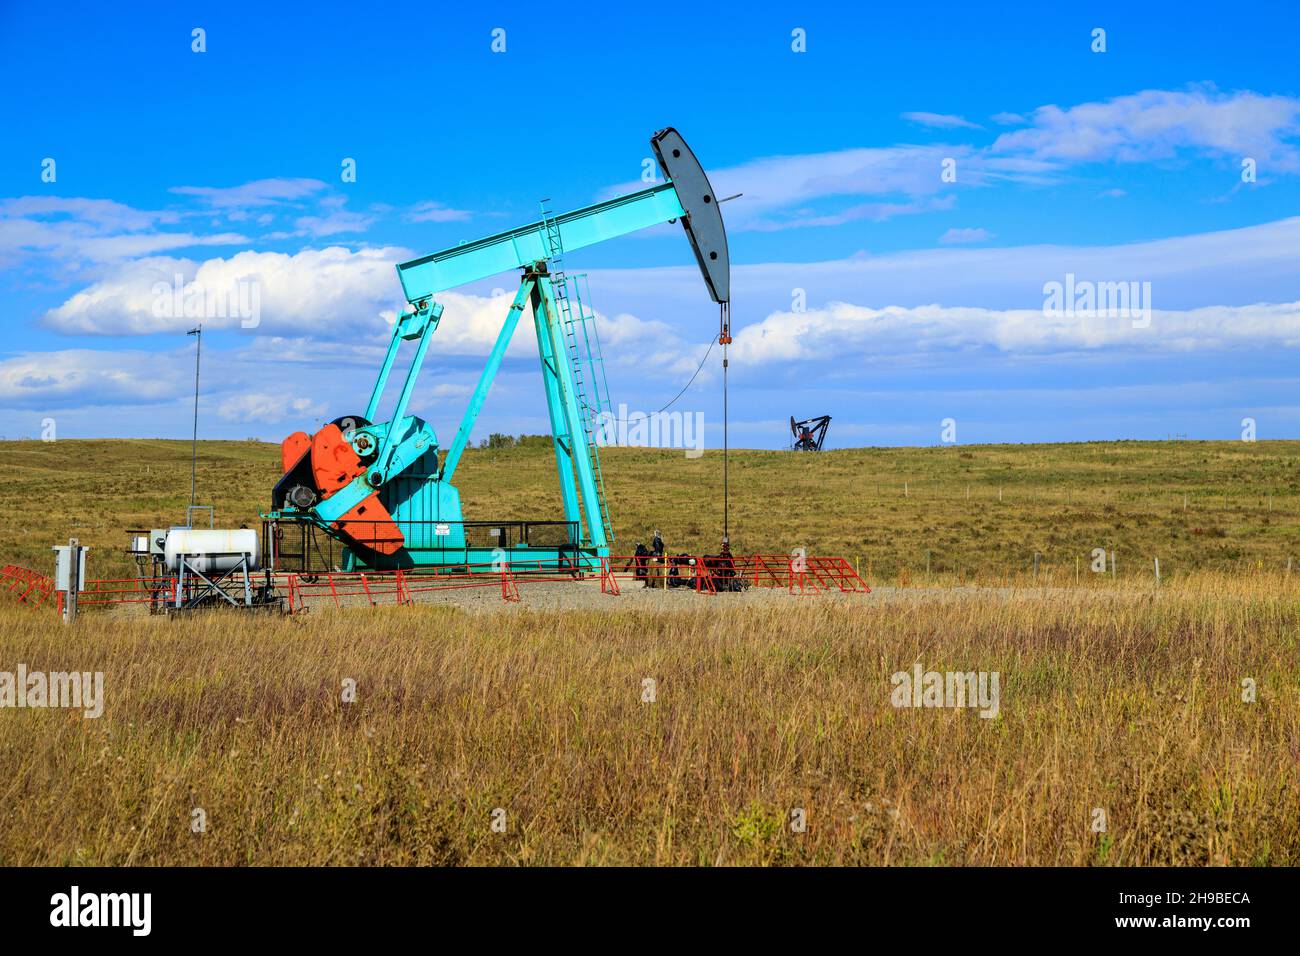 Un piccootone ad olio in Alberta, Canada. Un martinetto a pompa dell'olio è l'azionamento a terra per una pompa a pistoni alternativi in un pozzo dell'olio. Foto Stock